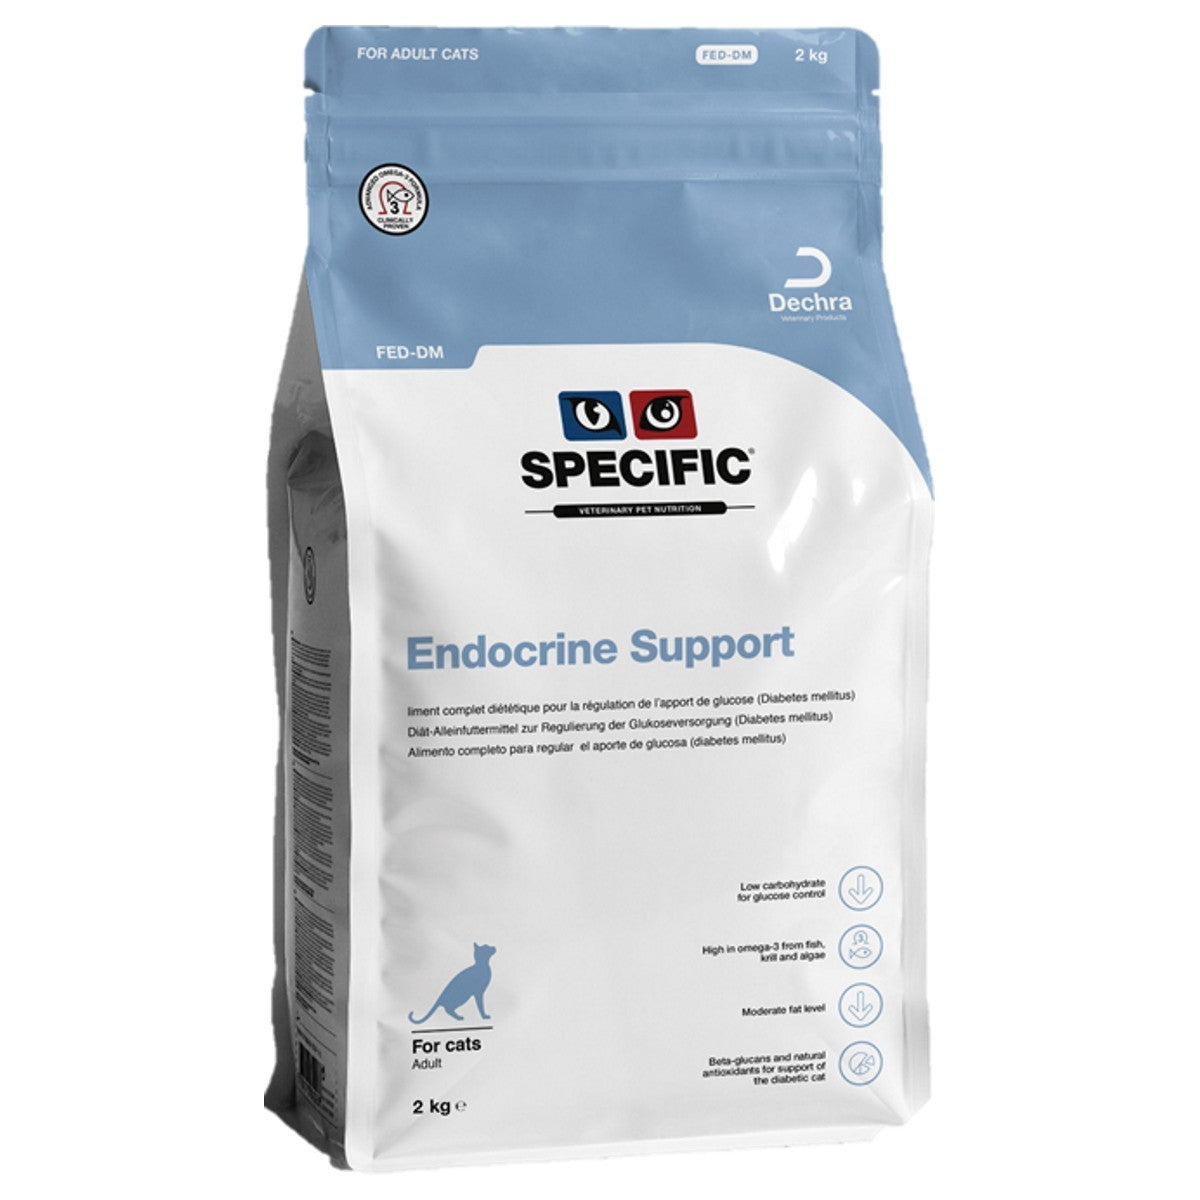 Dechra Specific FED-DM Endocrine Support Cat Food